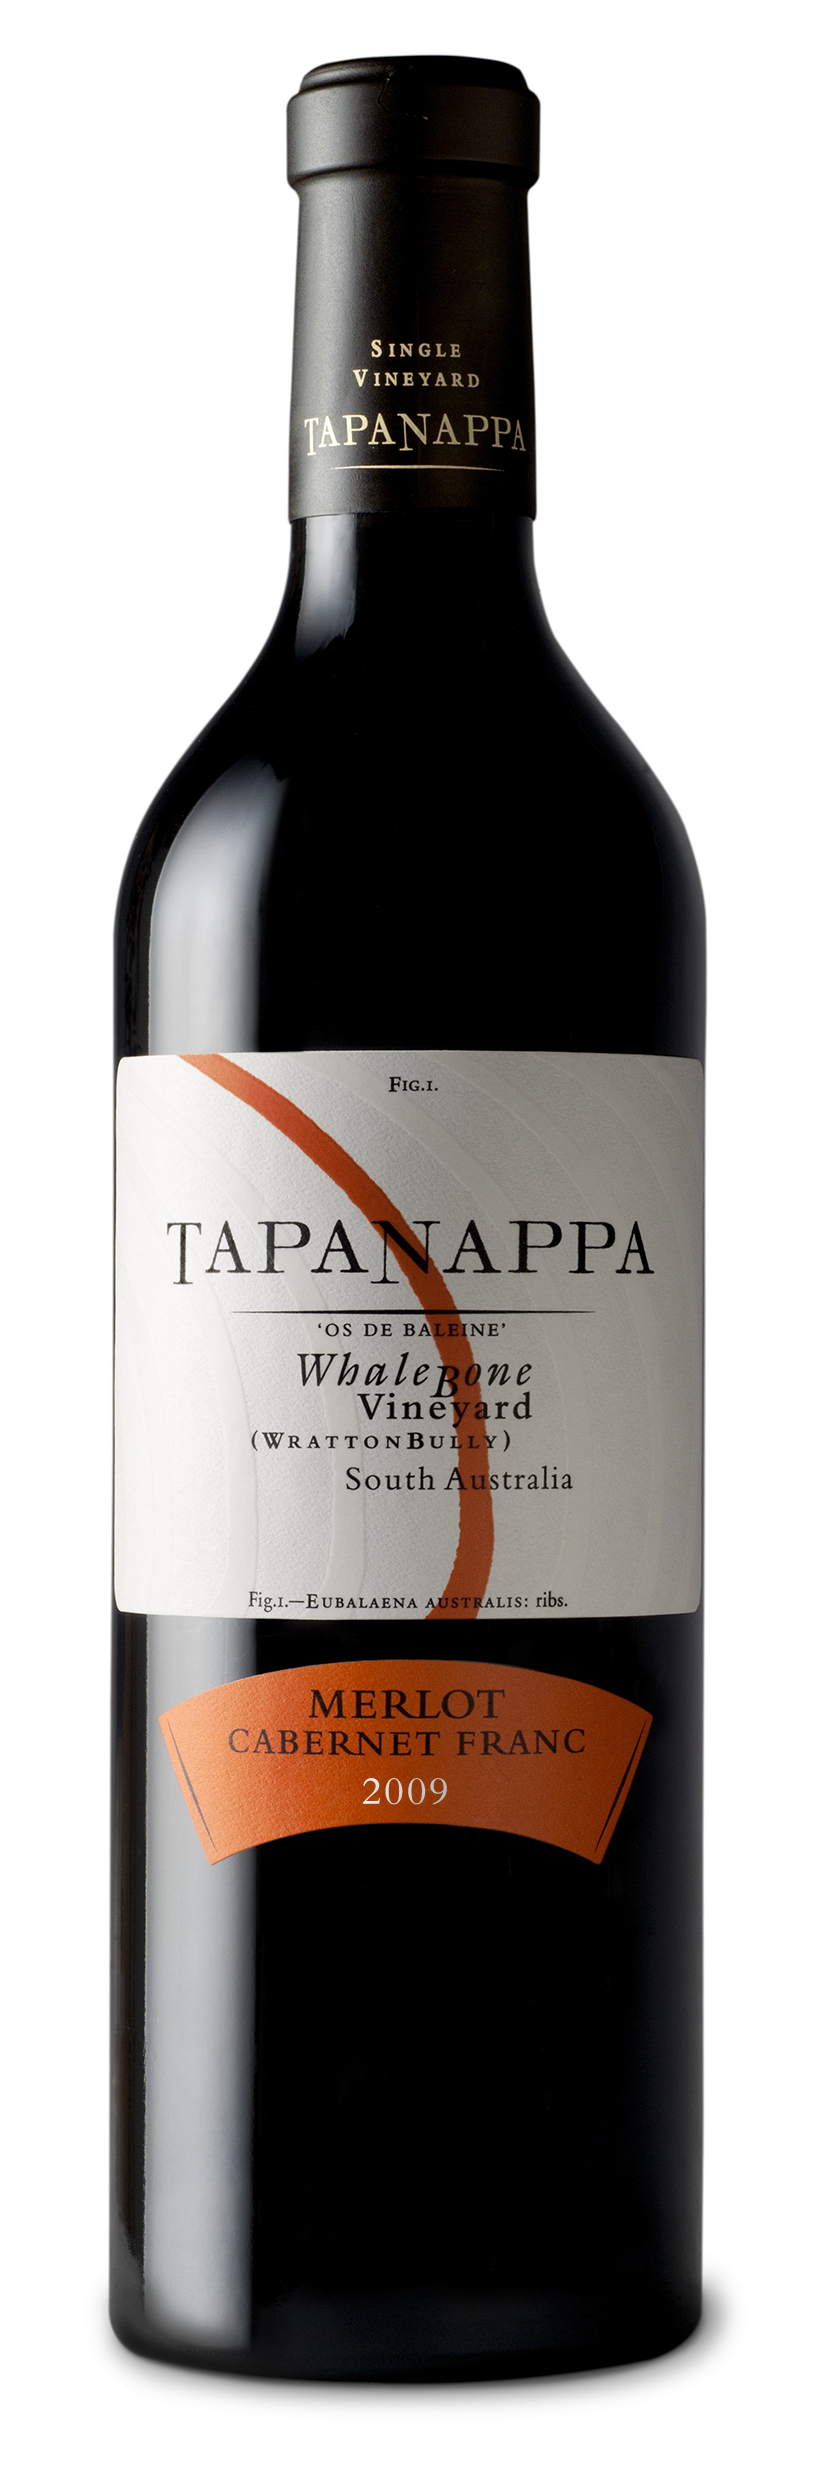 Tapanappa Whalebone Vineyard 2009 Merlot Cabernet Franc bottleshot